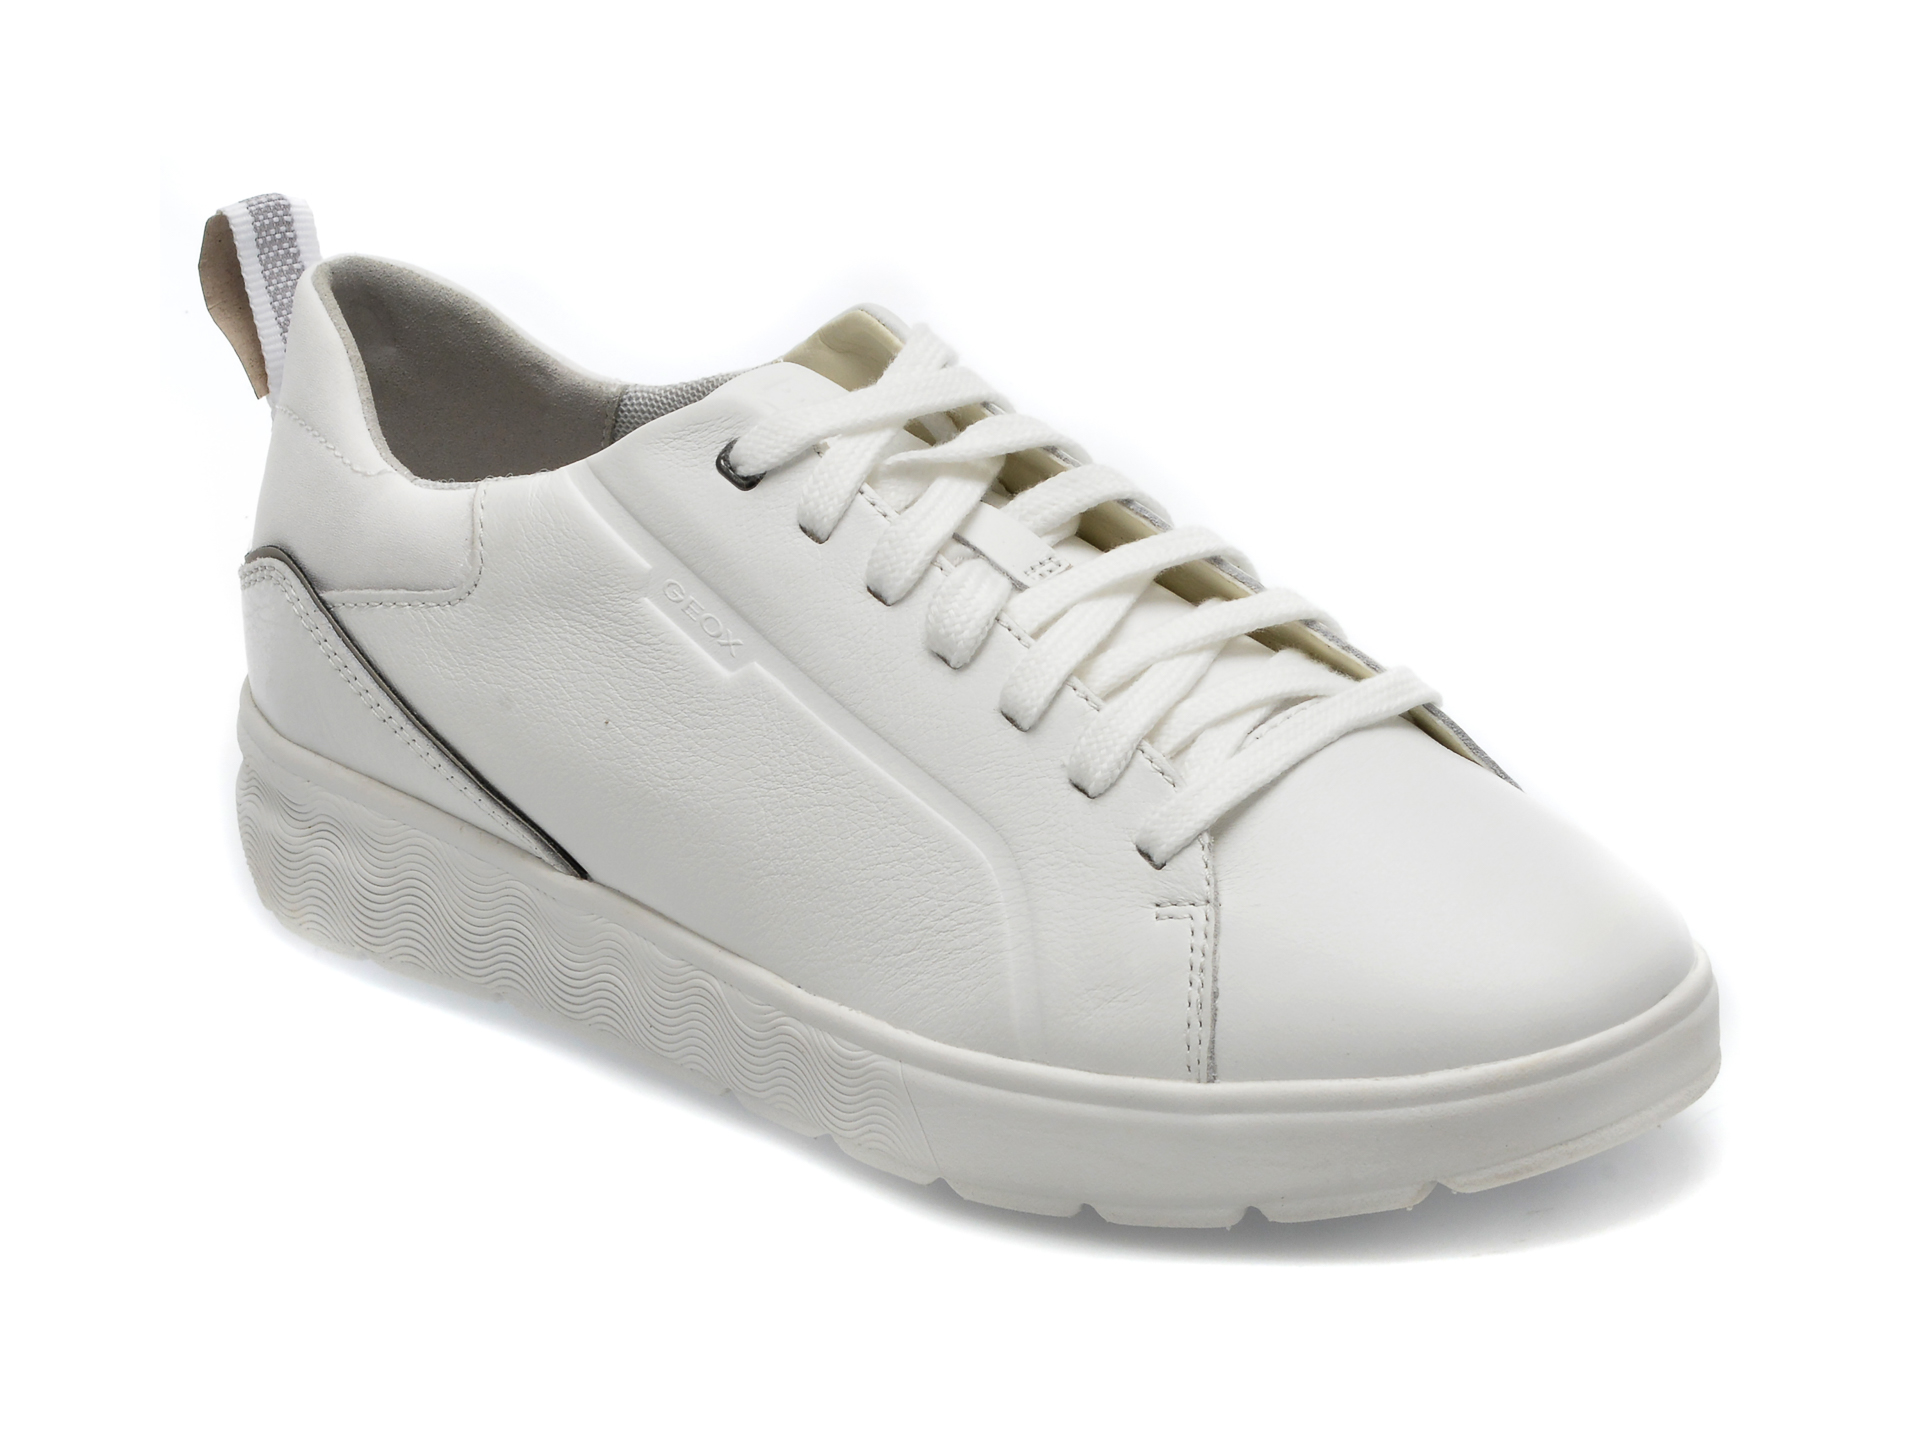 Pantofi GEOX albi, U25E7B, din piele naturala